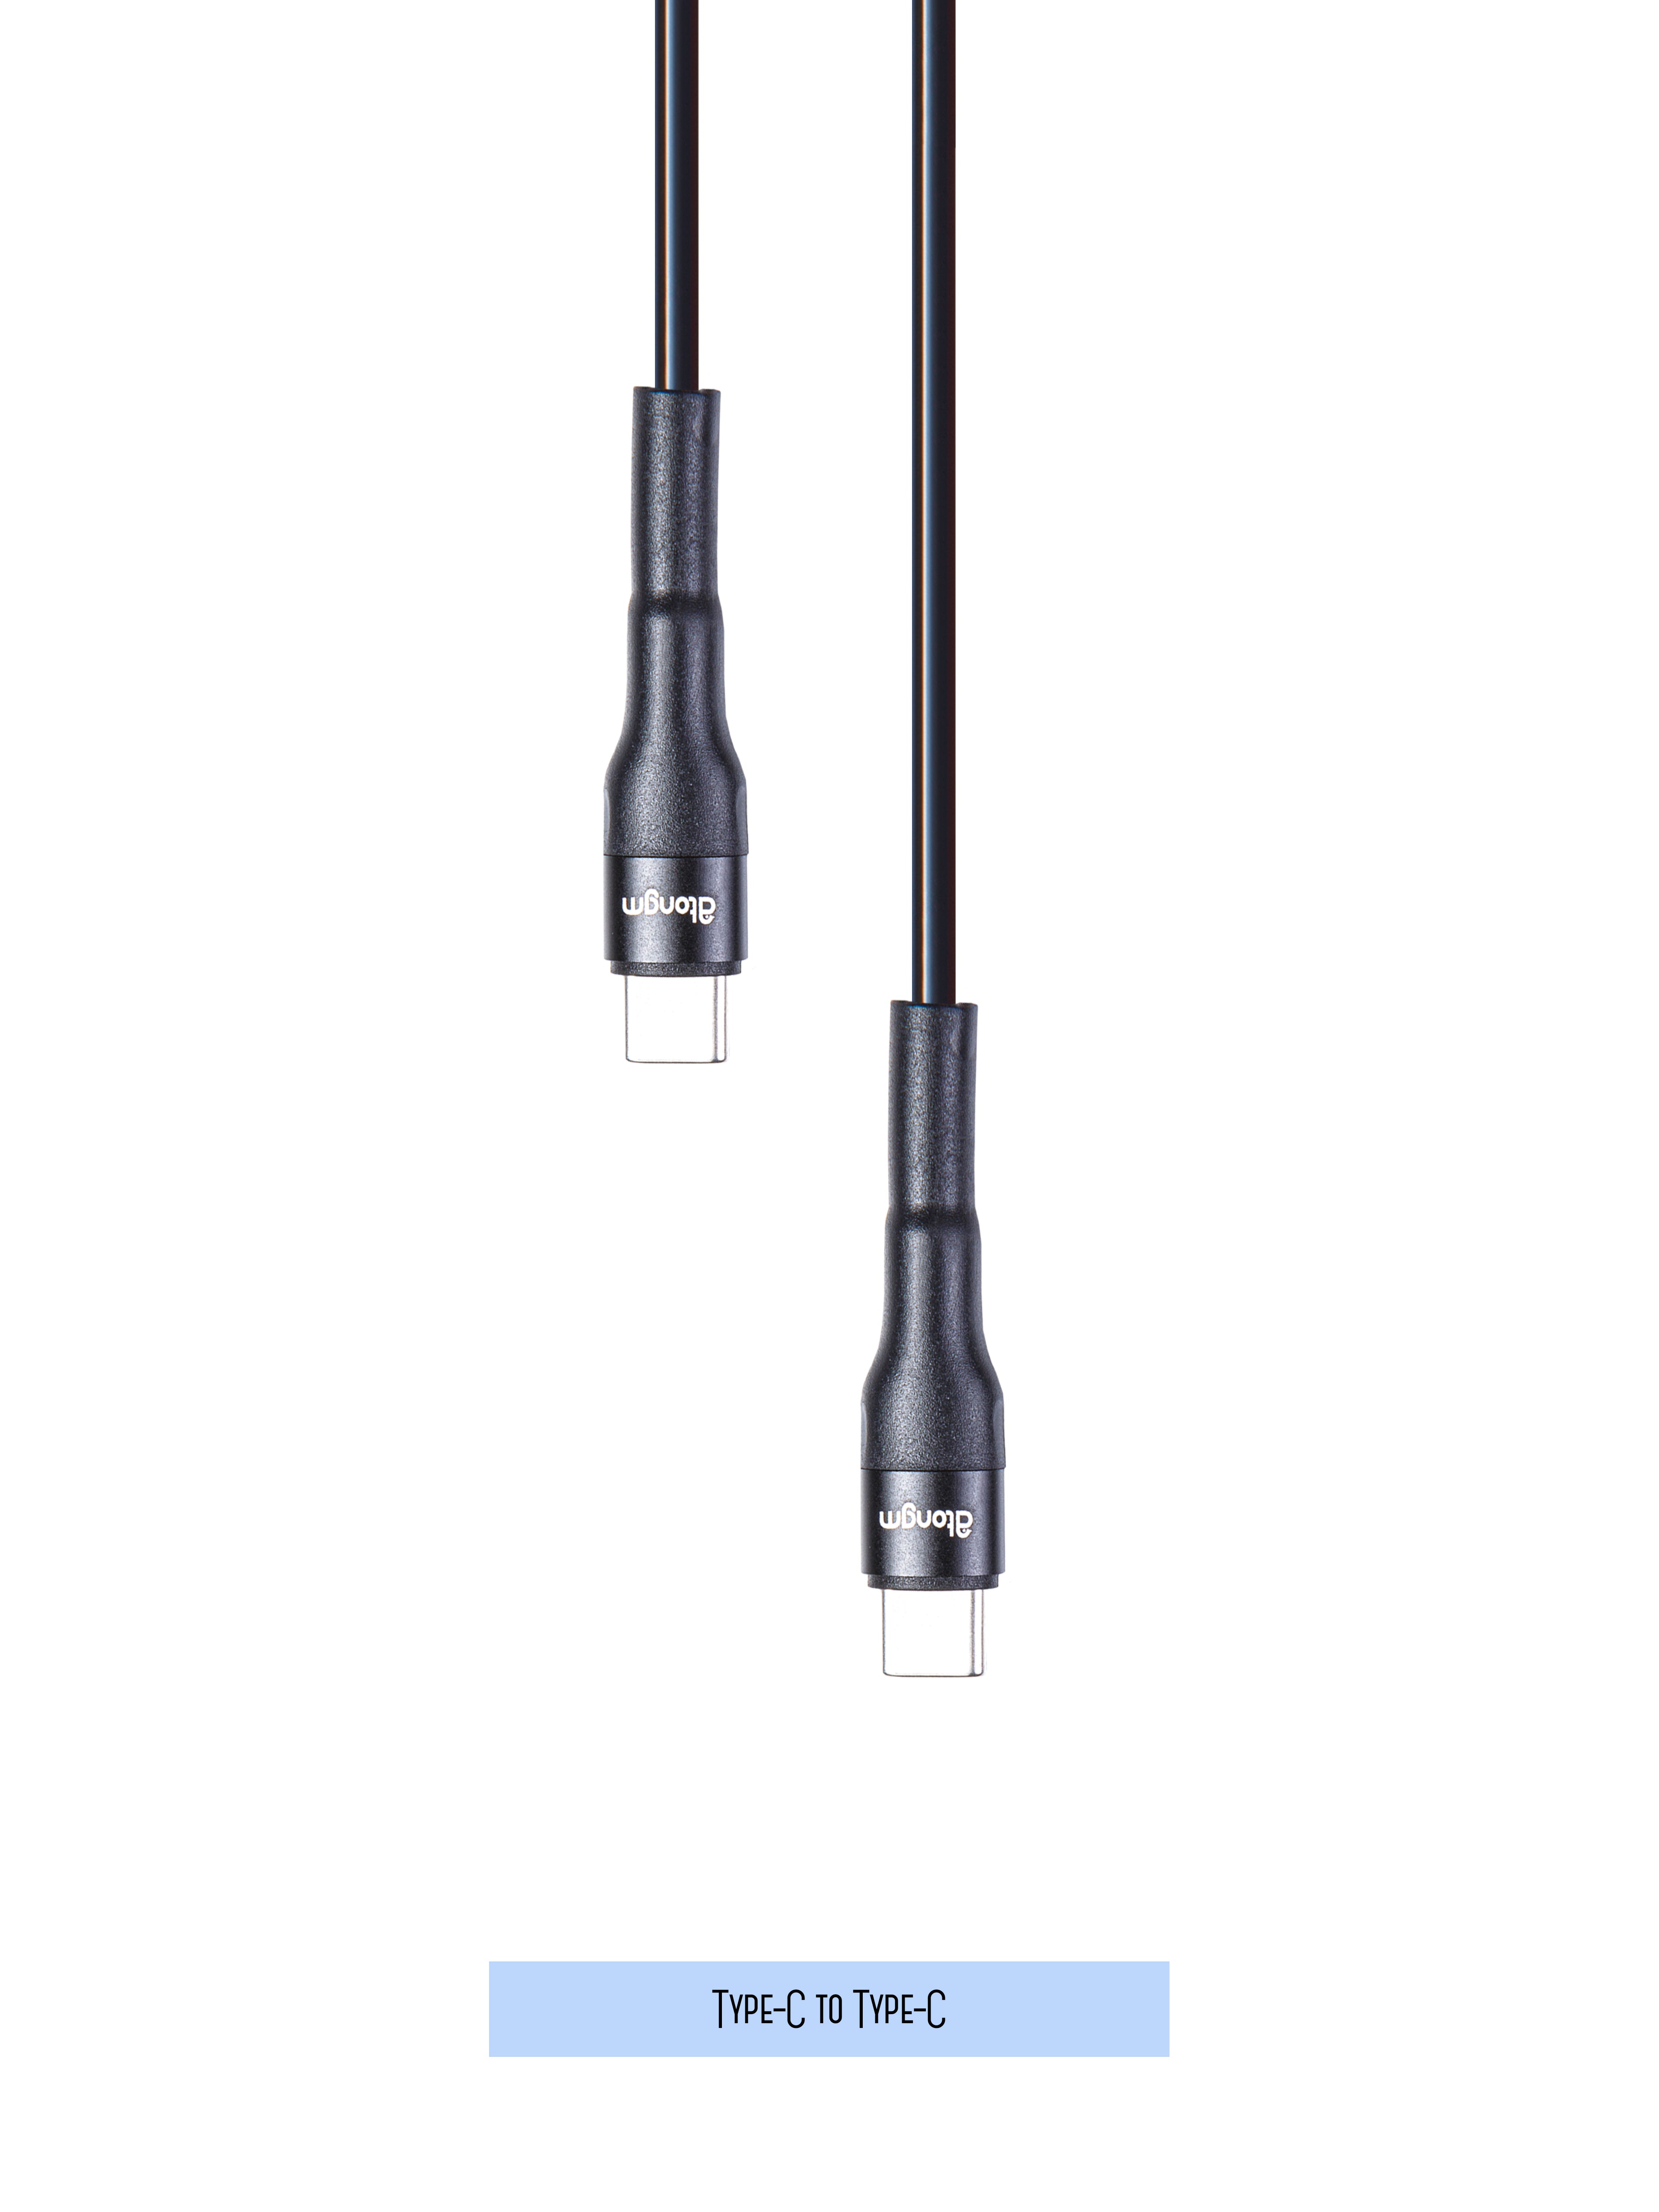 atongm type-c to type-c Kablo 3A/27W uzatma kablosu Hızlı Şarj Kablosu Örgülü Kırılmaz Kablo ( Akıllı Çip Teknolojili )